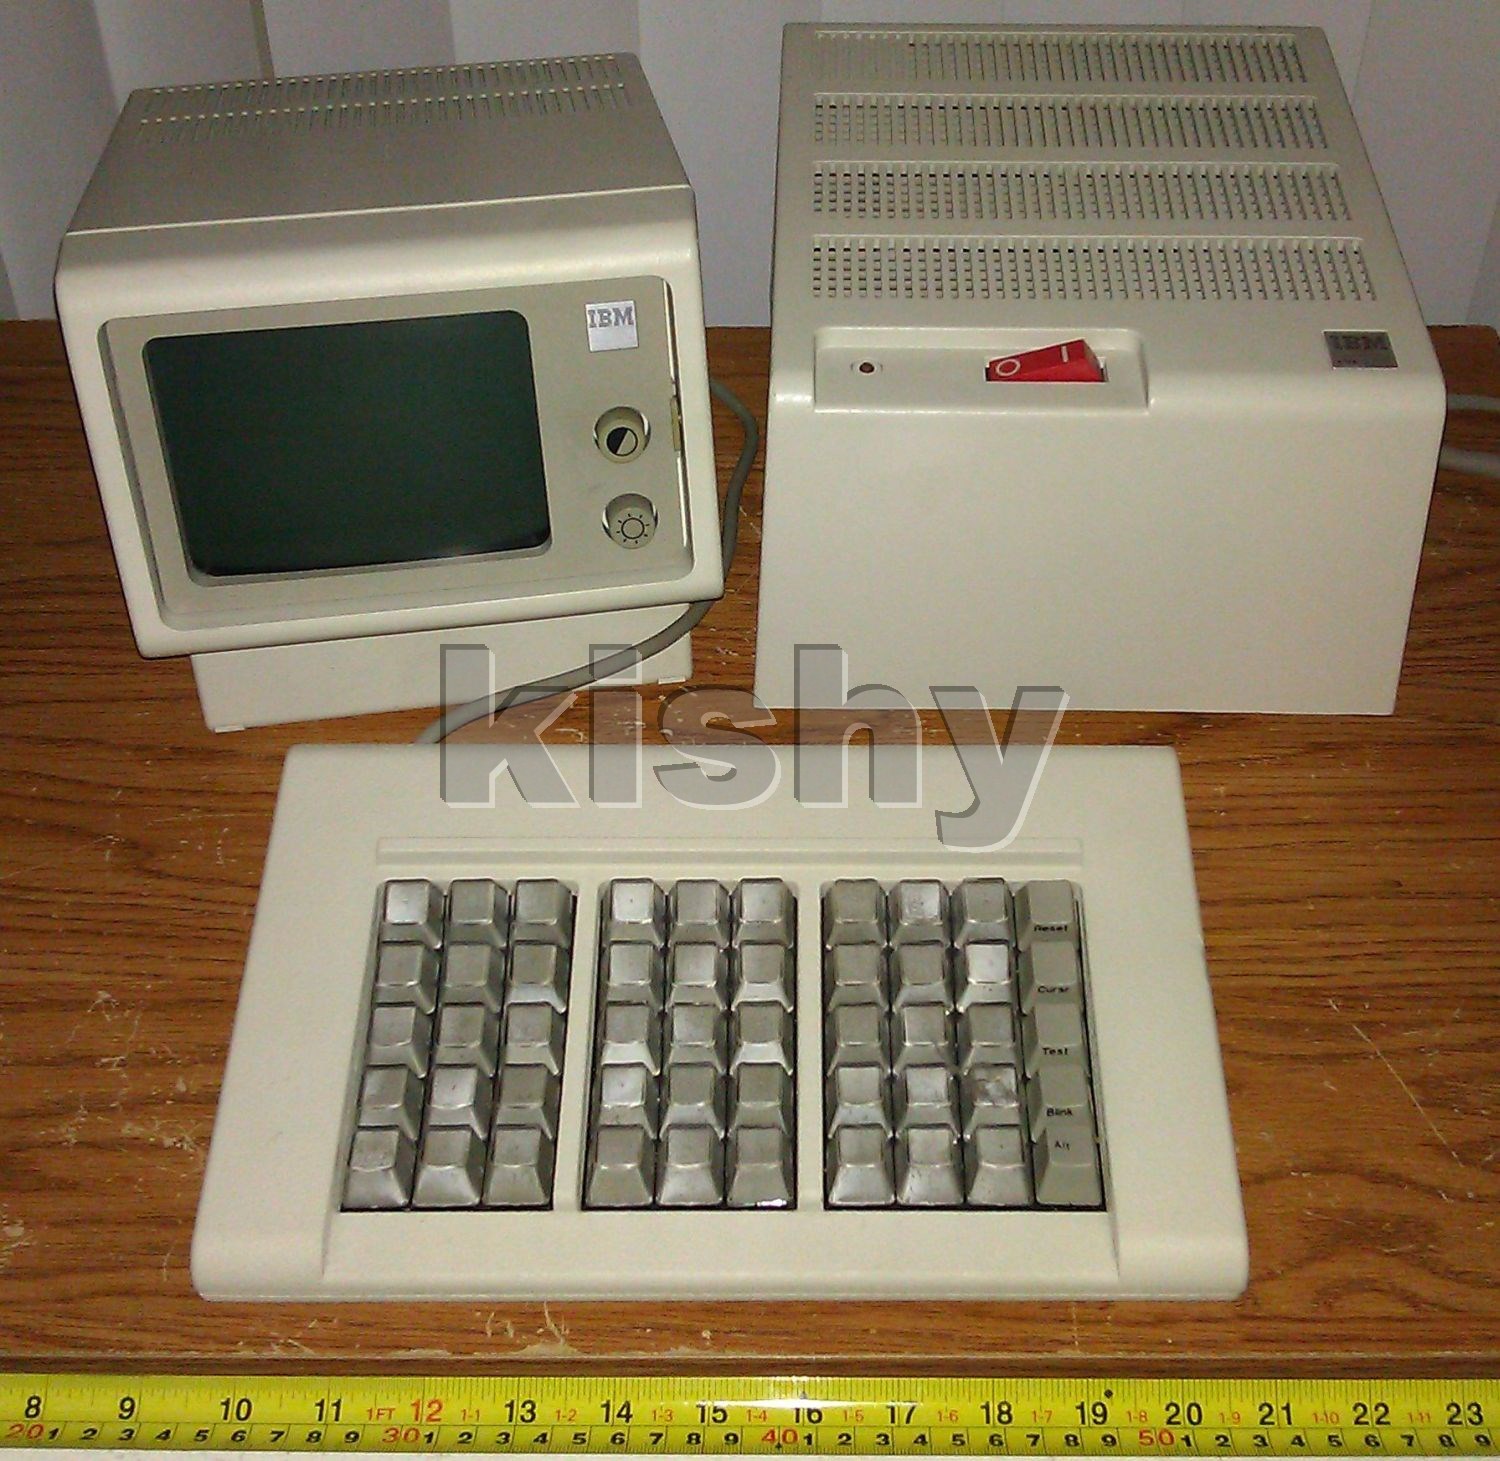 IBM 4704 with 50-key keyboard